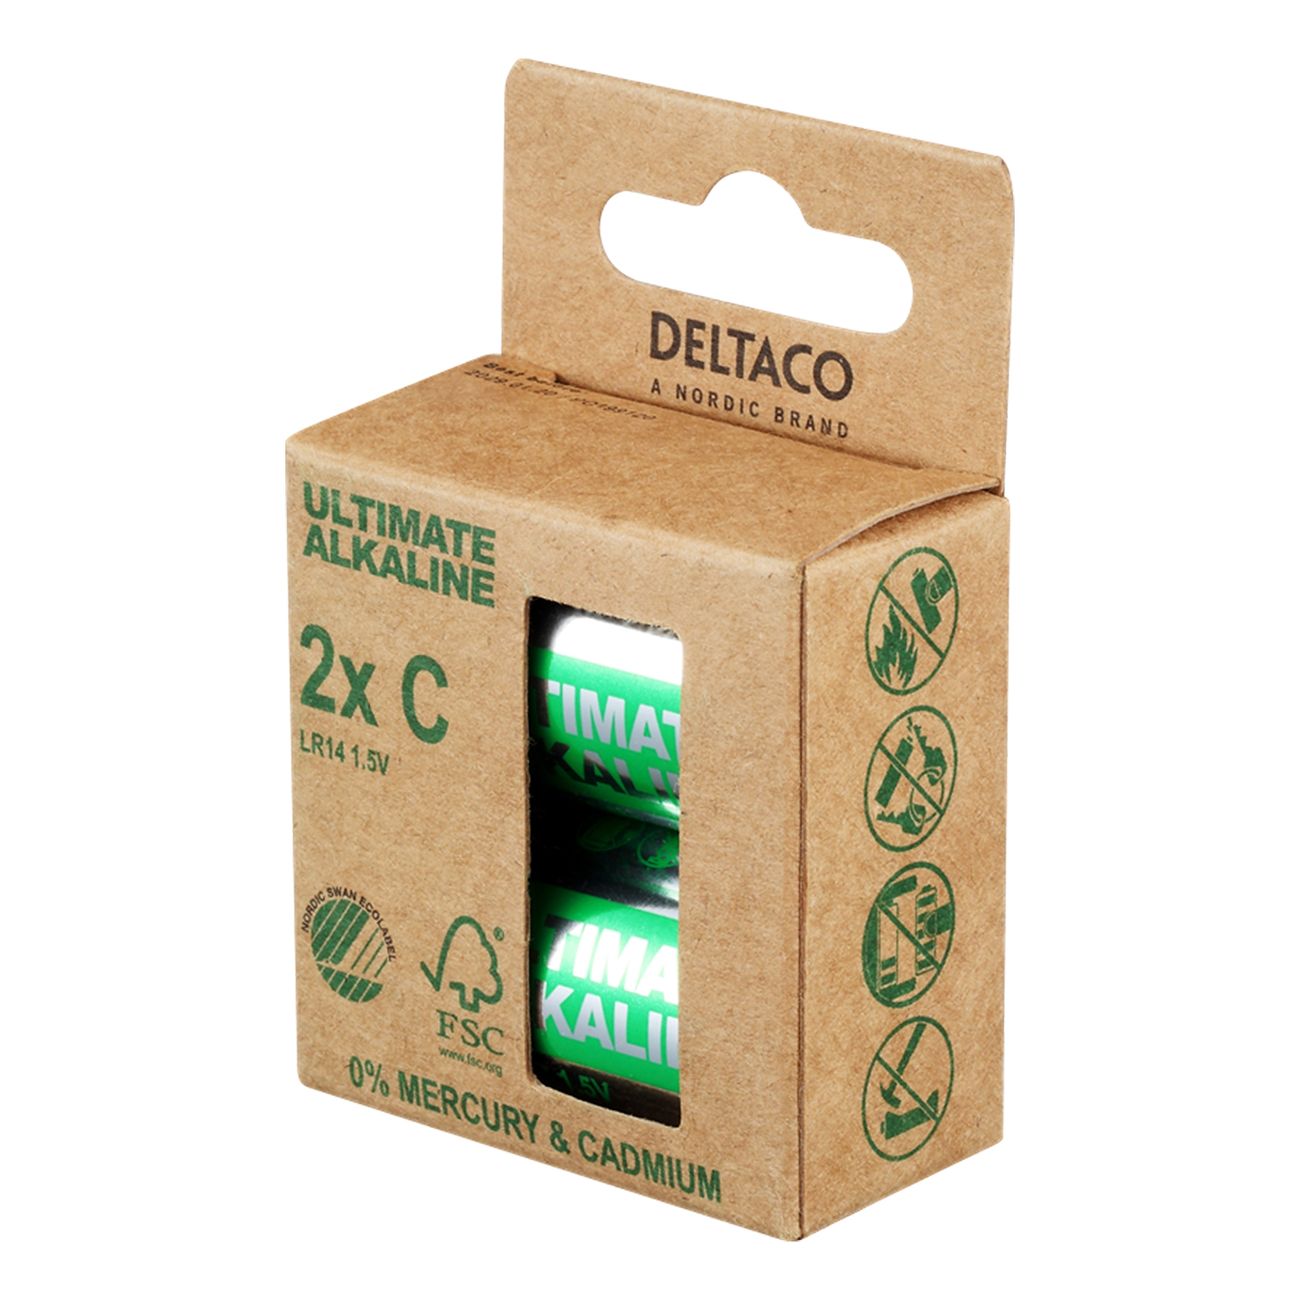 deltaco-ultimate-alkaline-batterier-91181-6